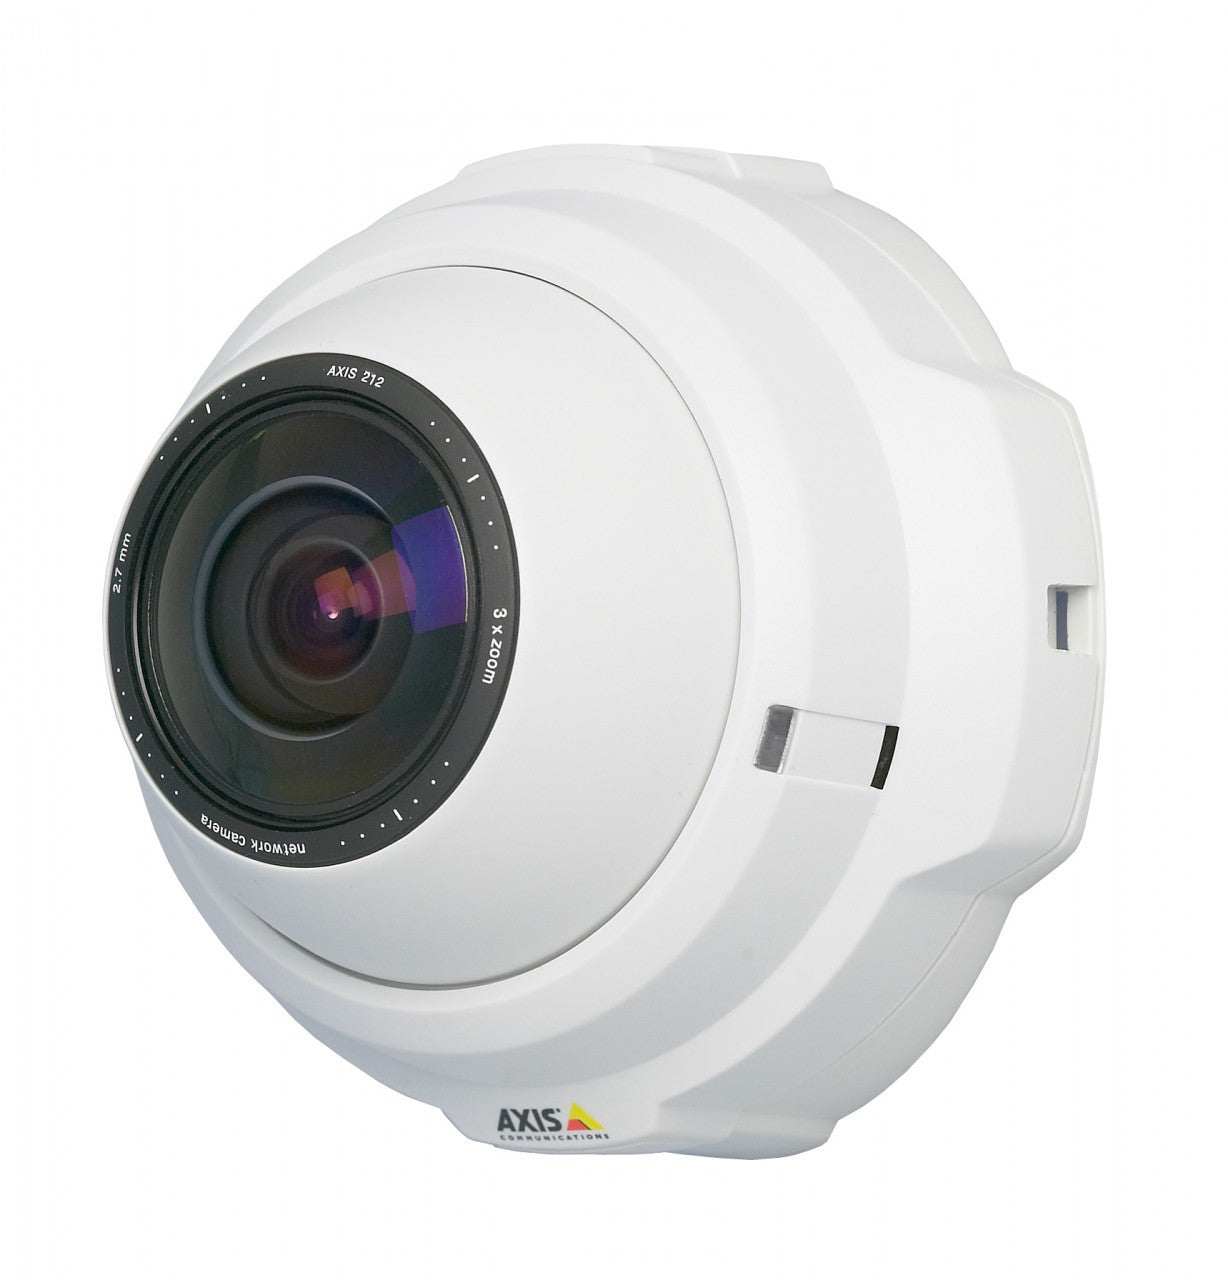 AXIS 212 PTZ-V (0280-004) Network Camera